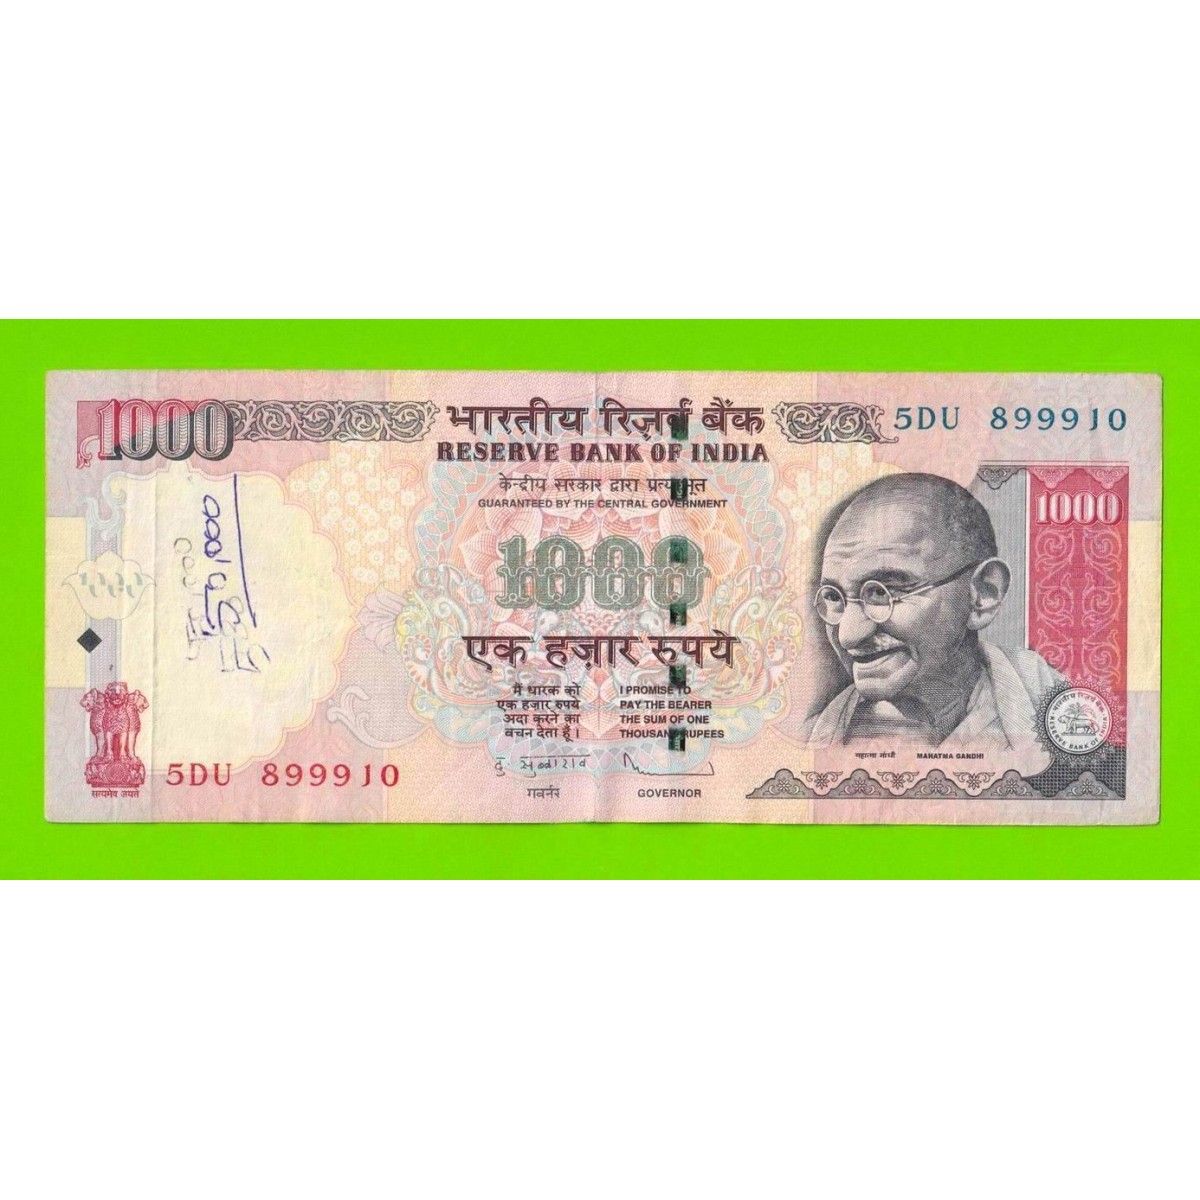 Inr в рубли. 1000 Индийских рупий. Индийская валюта 1000. Индонезийская валюта в 1000. Банкноты 1000 рупий.